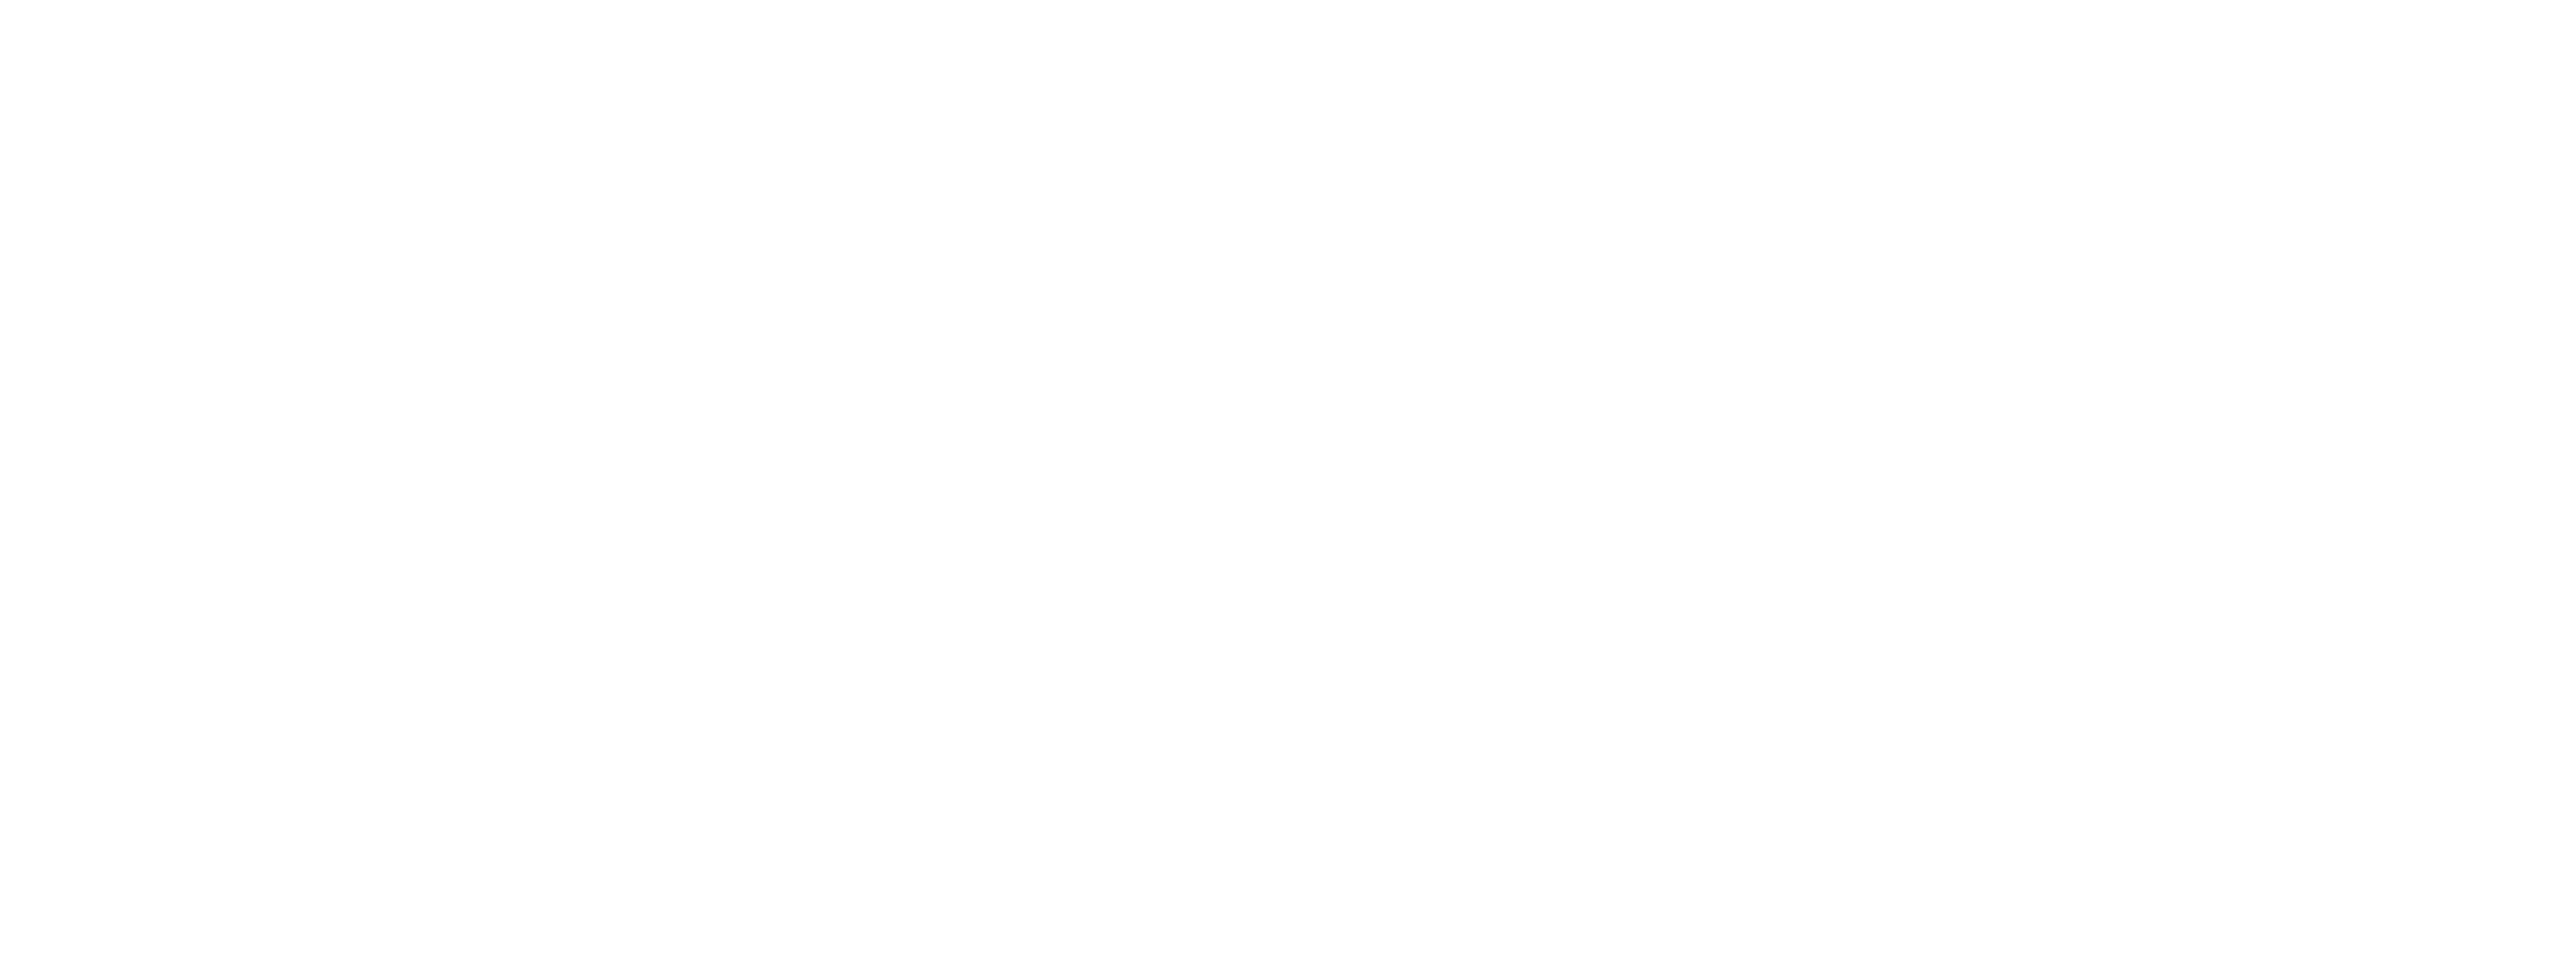 Eat Like An Elephant